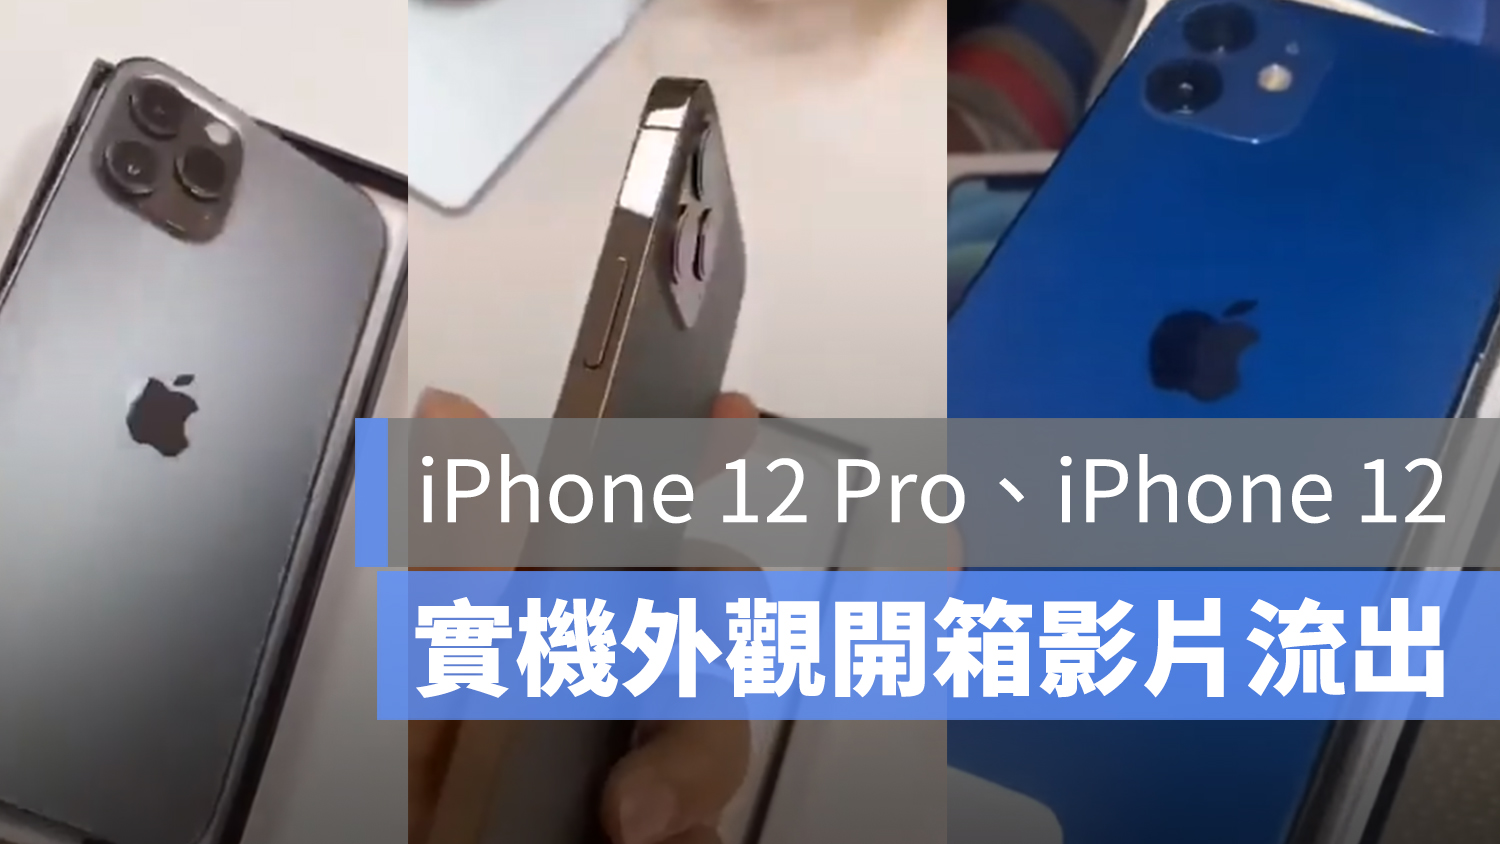 iPhone 12 外觀影片 流出 Pro